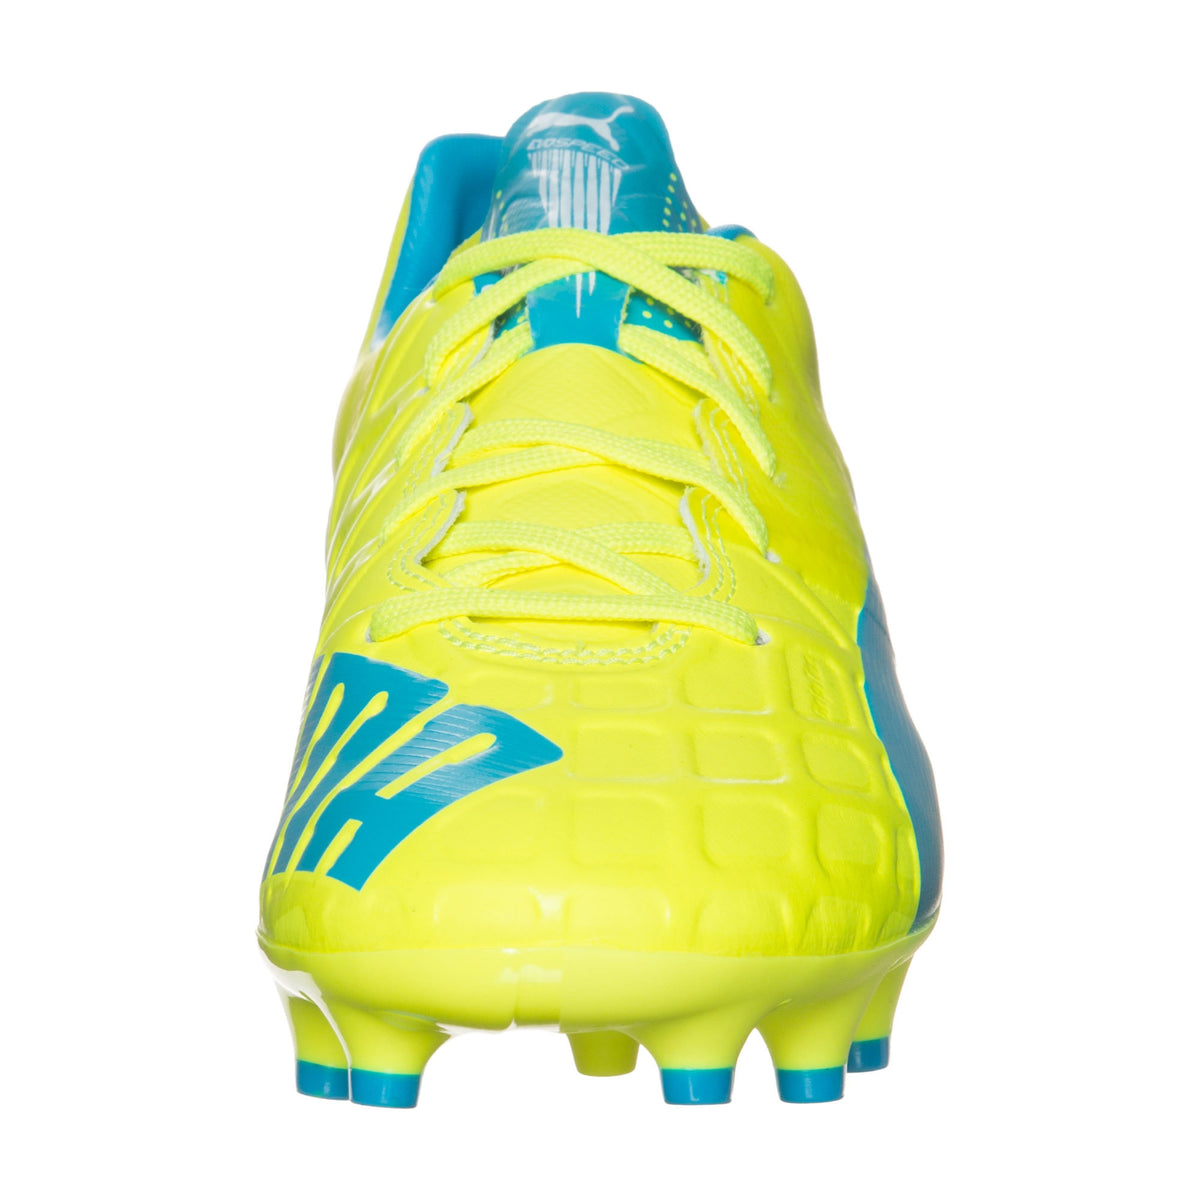 Puma evoSPEED 1.4 FG Junior chaussure de soccer enfant jaune bleu fv